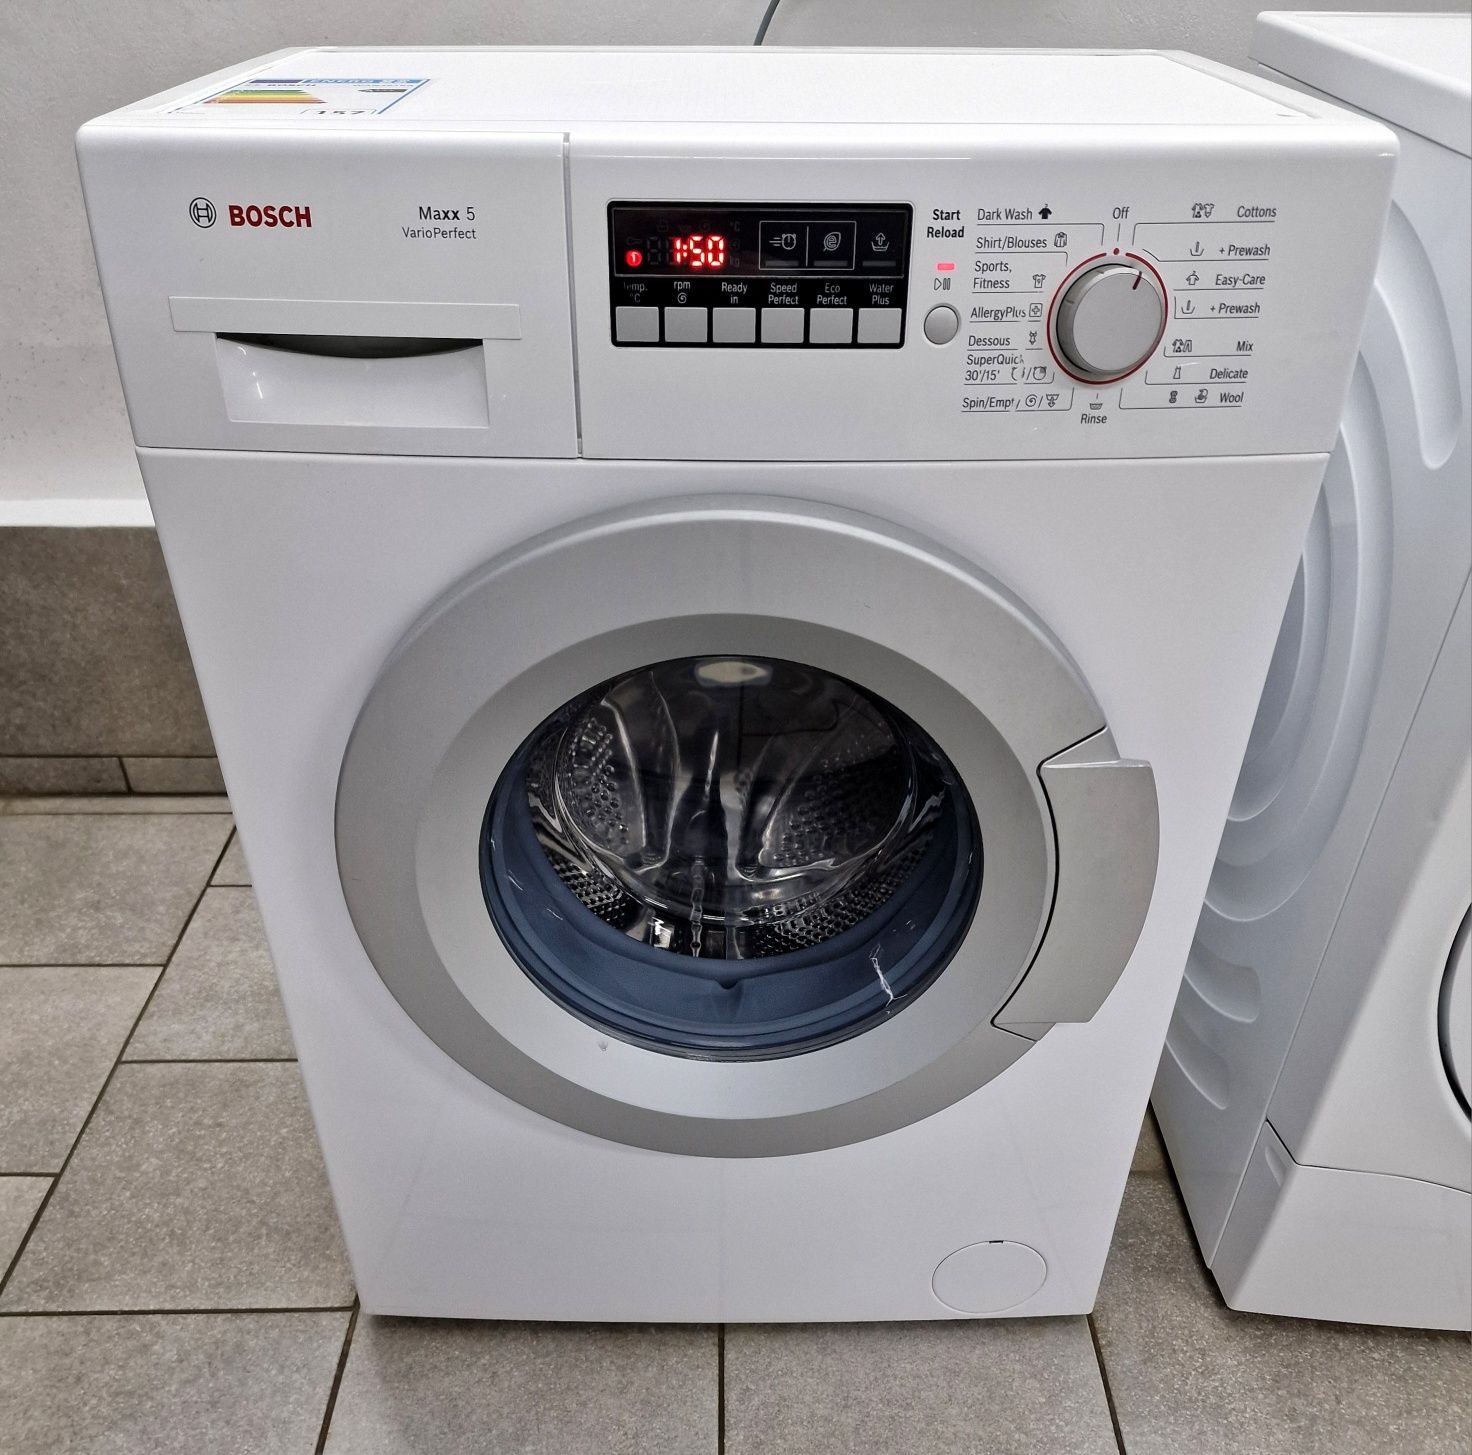 Узкая пральна/стиральная/ машина BOSCH Maxx 5 / Made in Germany